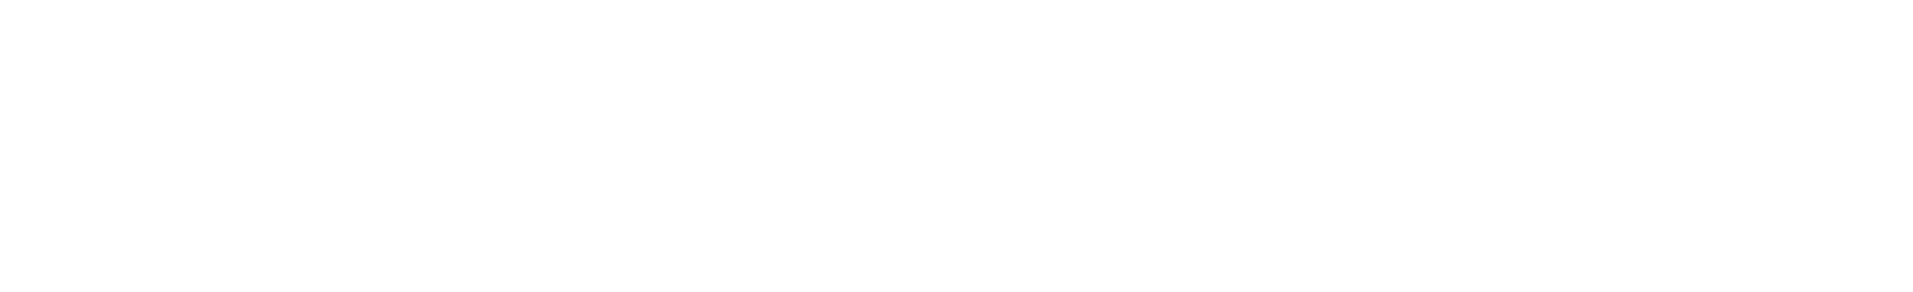 217-tranesiteswhite-logo.png